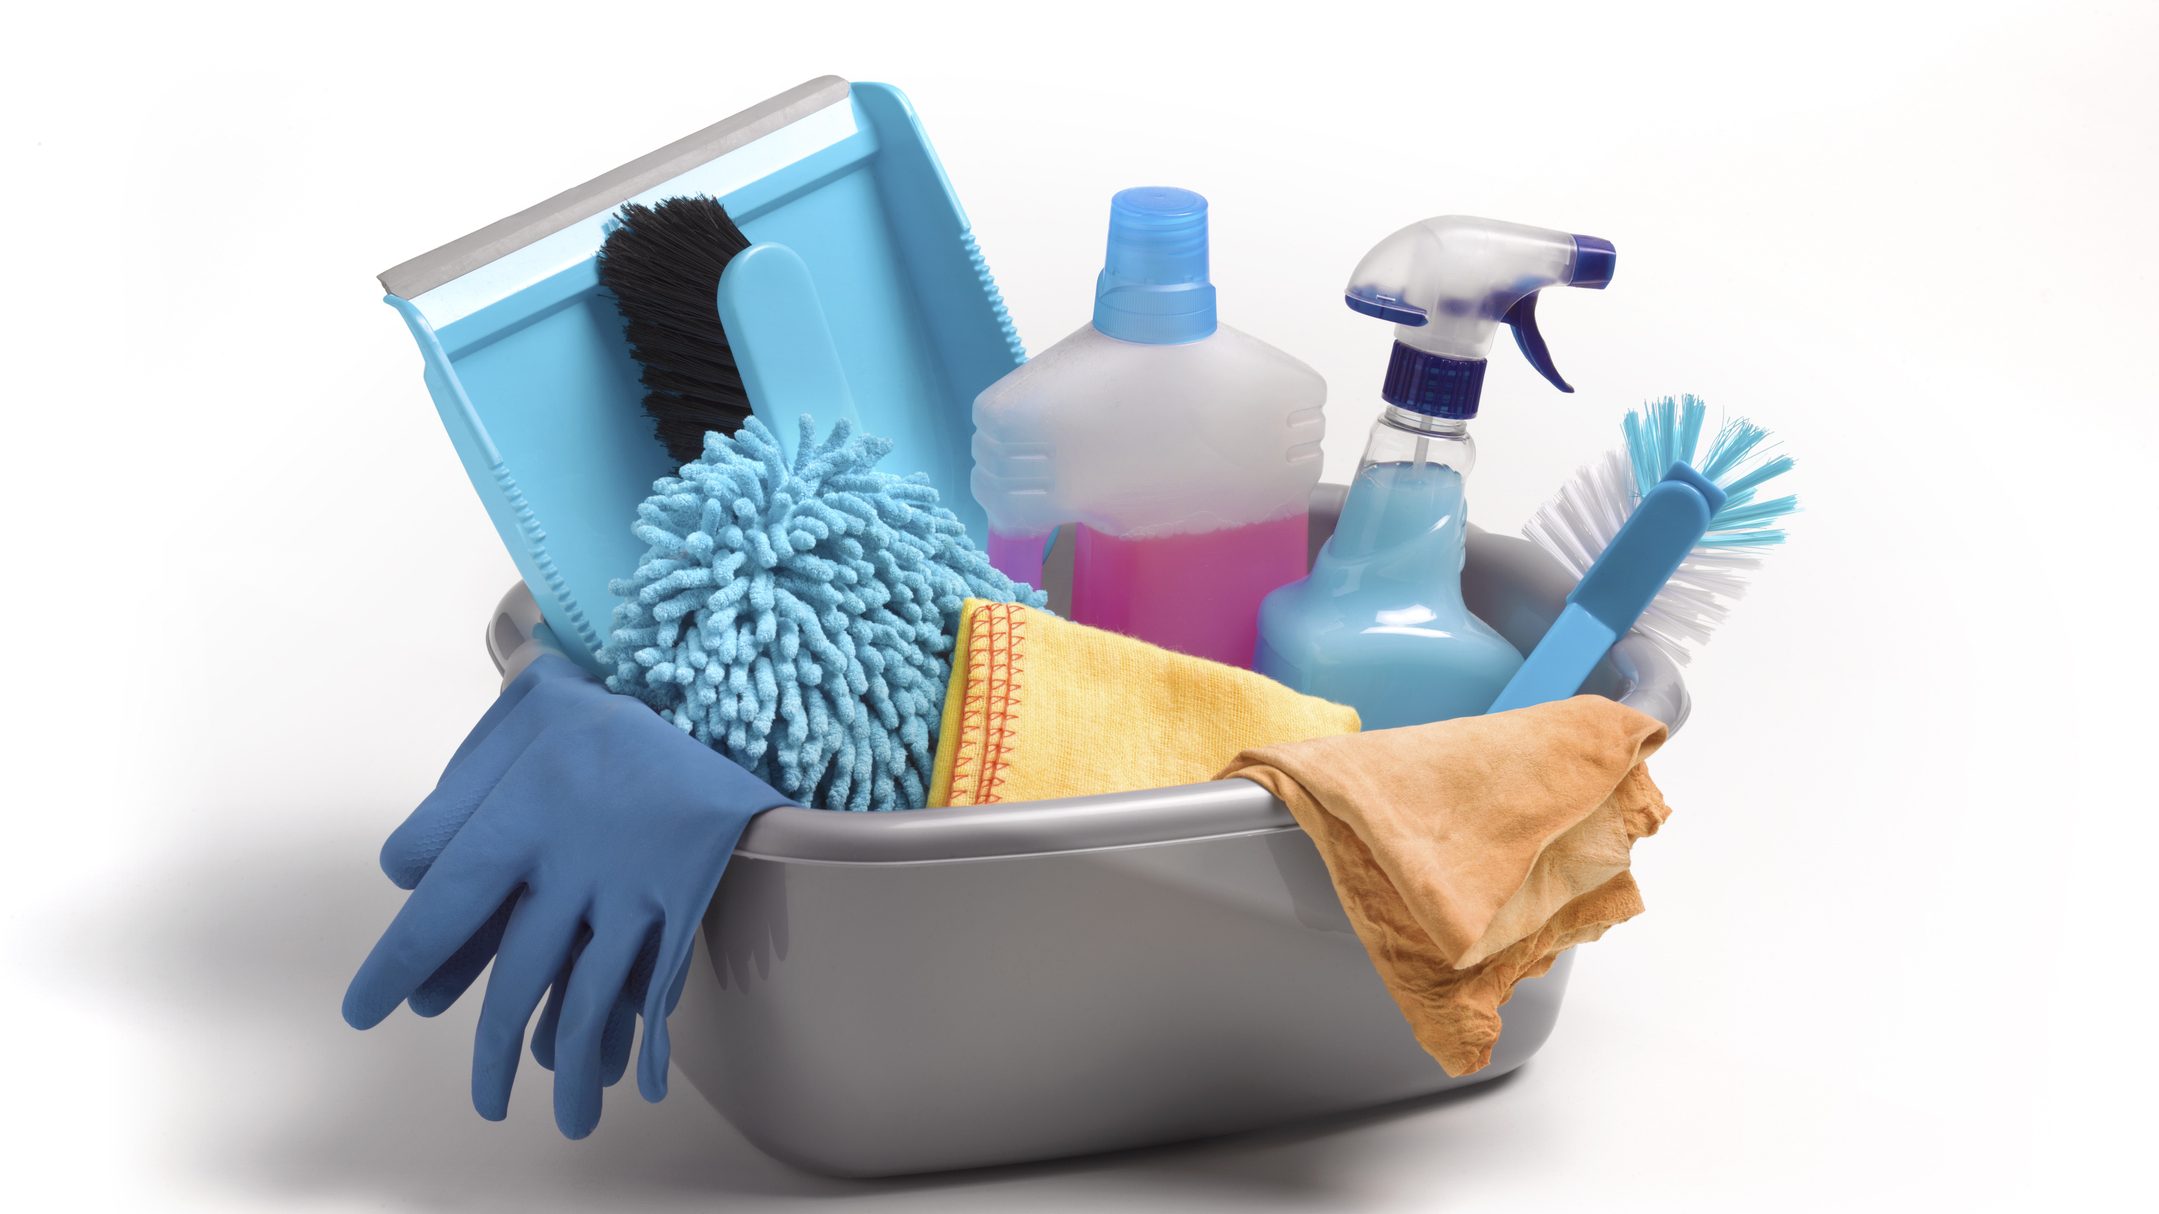 Estos son los productos y utensilios básicos de limpieza que necesitas tener